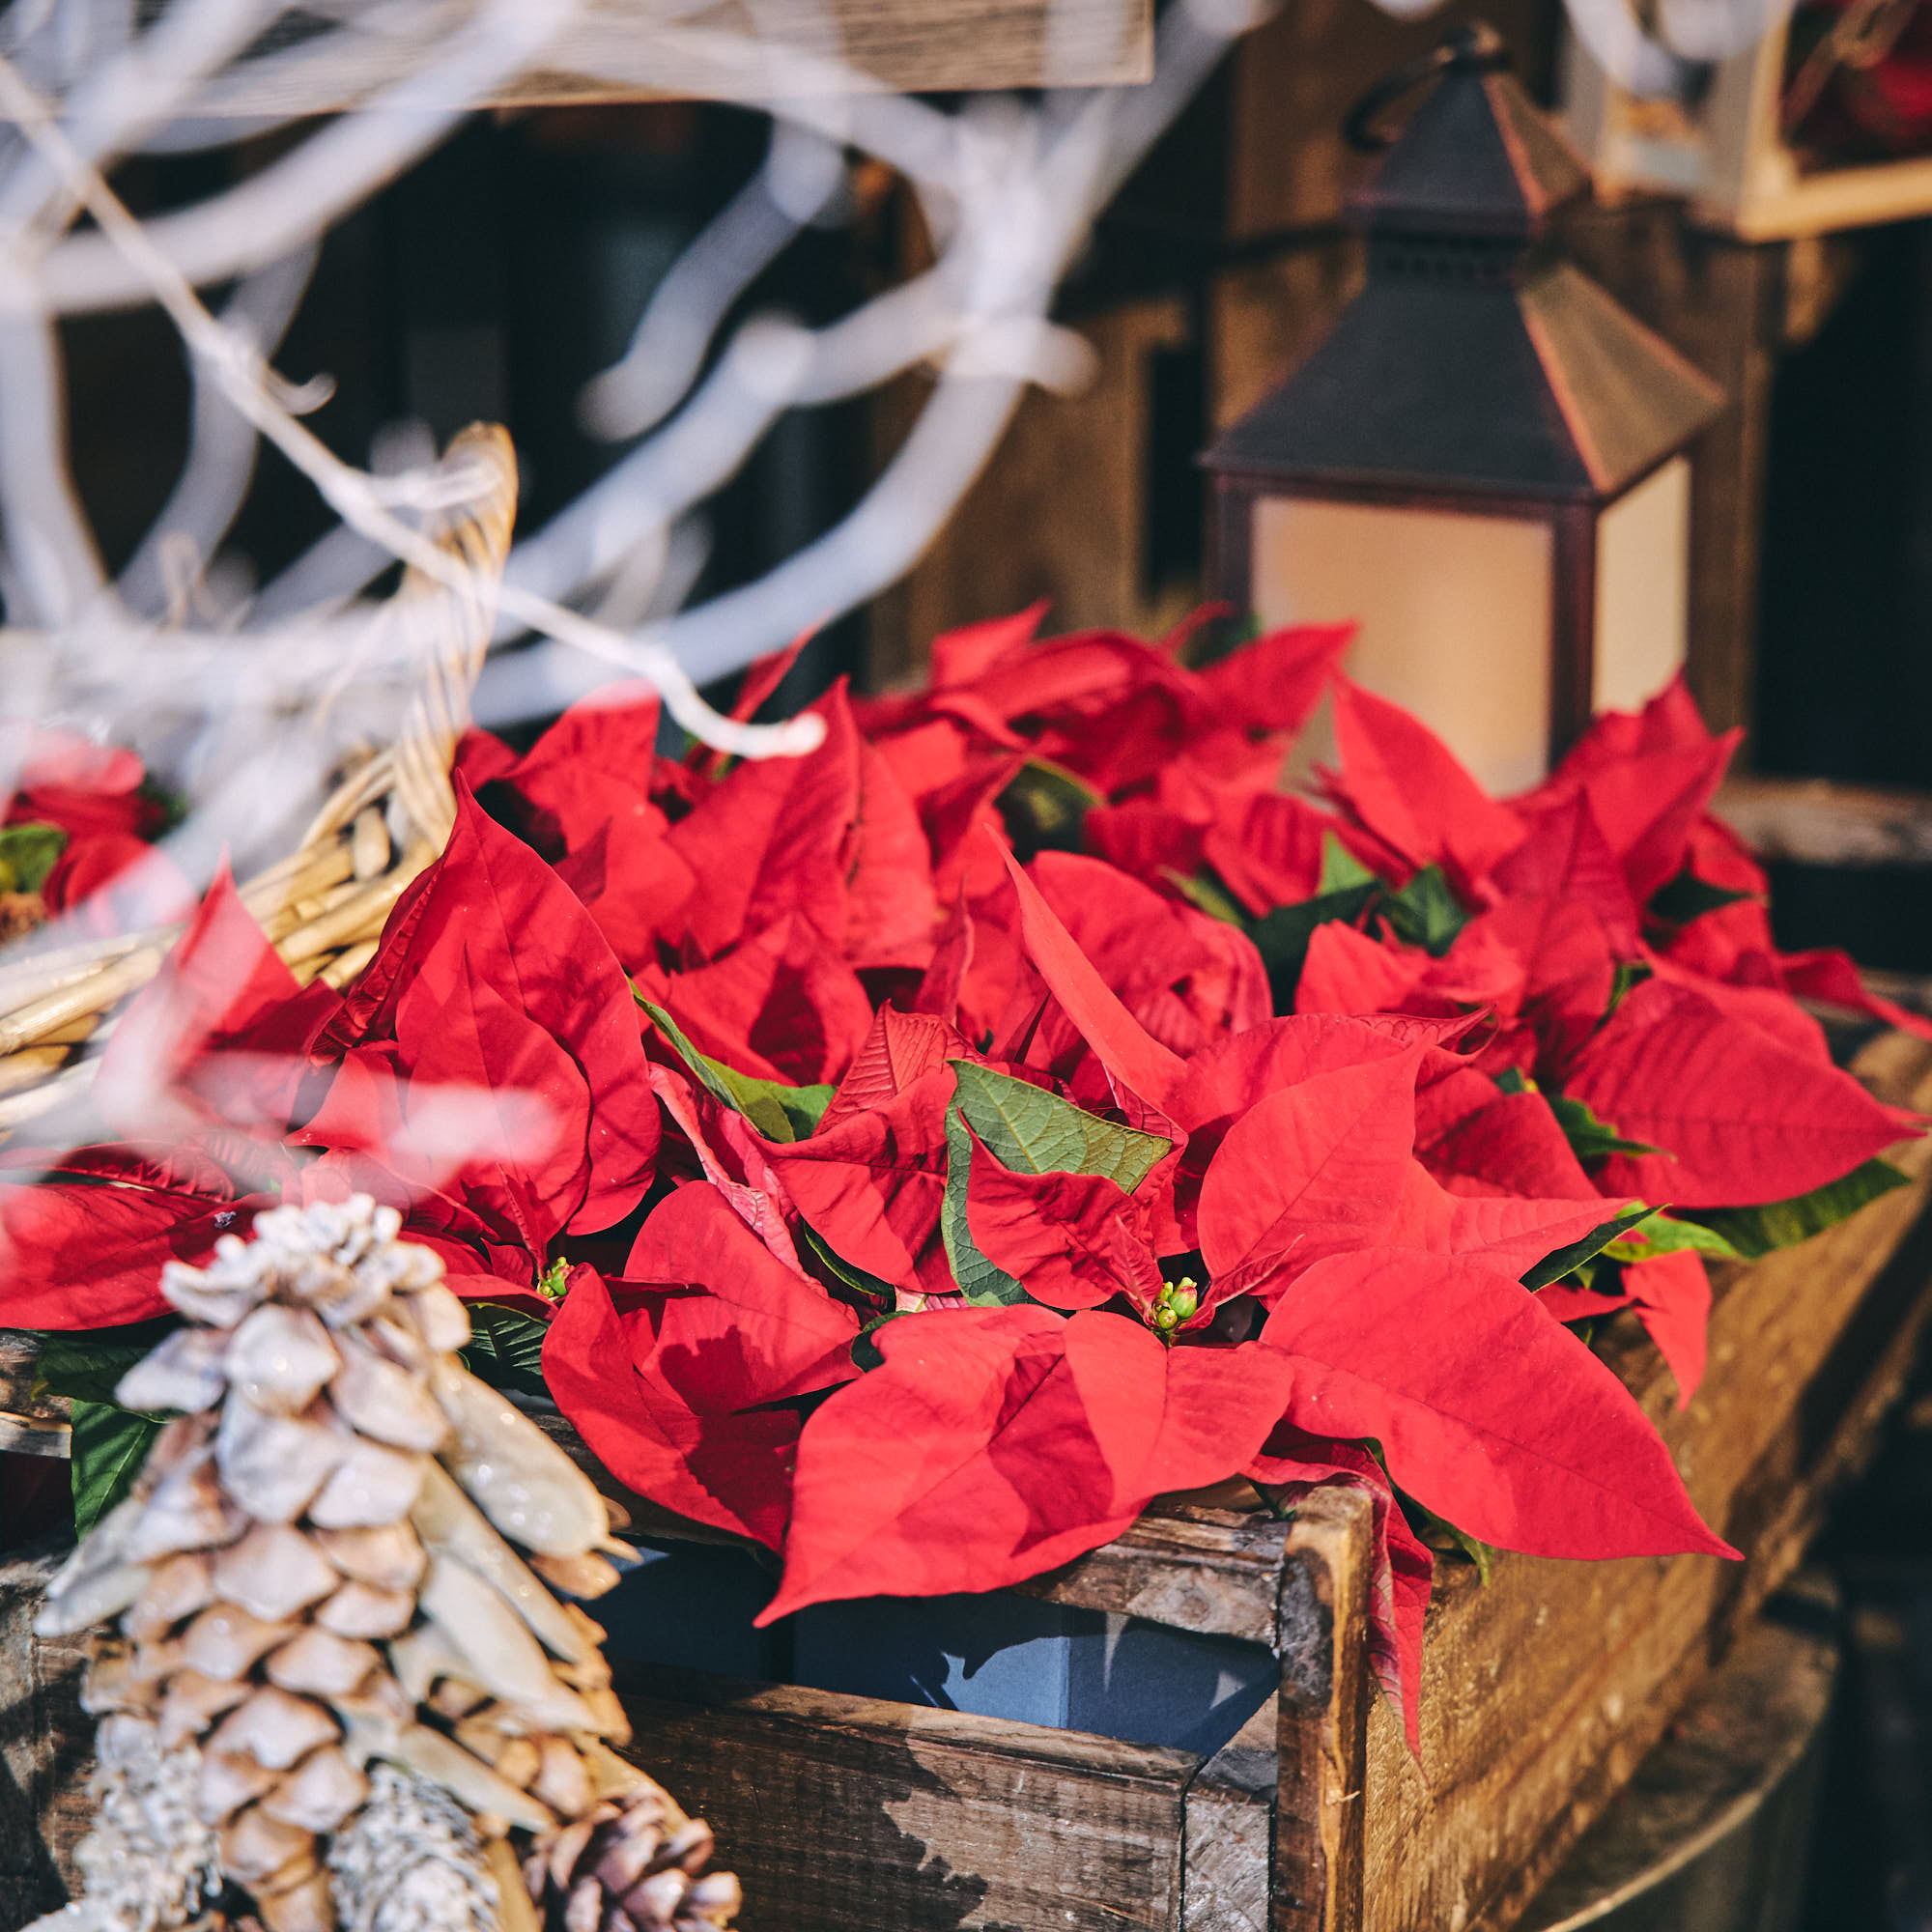 青山フラワーマーケット クリスマスを彩る花 ポインセチア が 青山フラワーマーケットの店頭にも並び始めました 11月ともなるとクリスマスはまだ先 と思いがちですが 青山フラワーマーケットのこだわりのポインセチアは 11月中旬から入荷が始まり 12